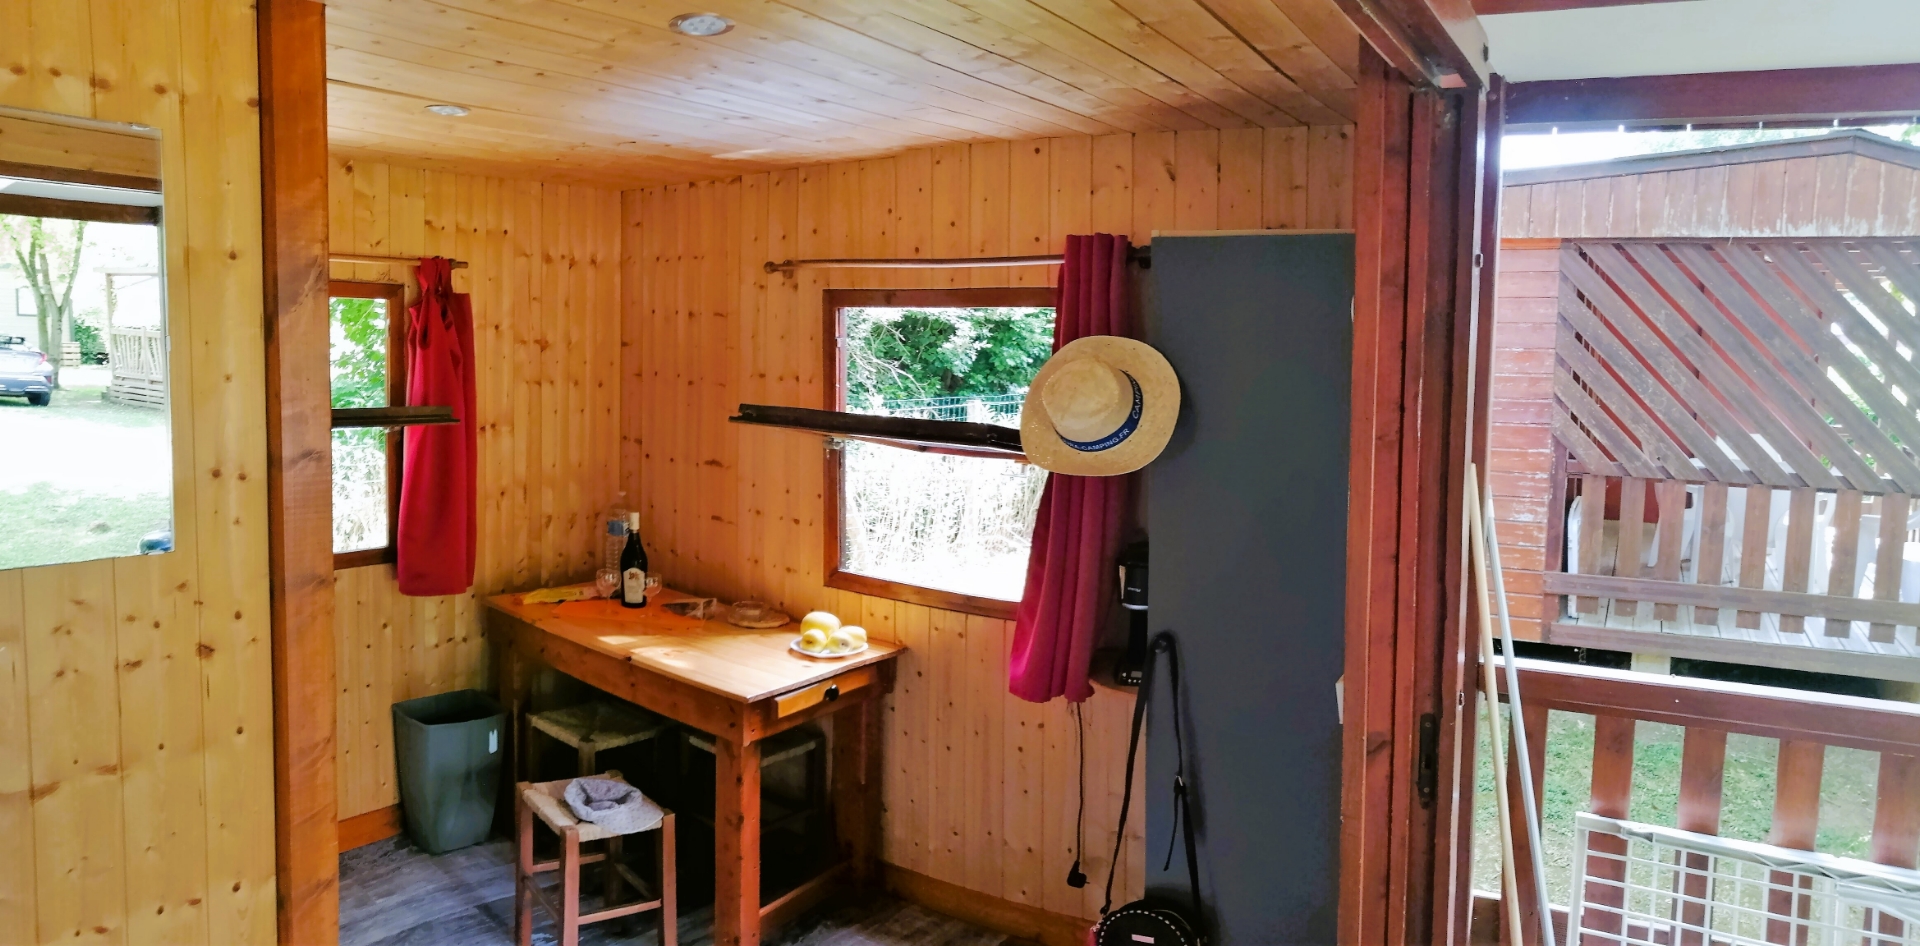 Der Küchen-/Essbereich des kleinen Chalets, zu vermieten auf dem Campingplatz Les Bords de Loue in der Region Bourgogne-Franche-Comté